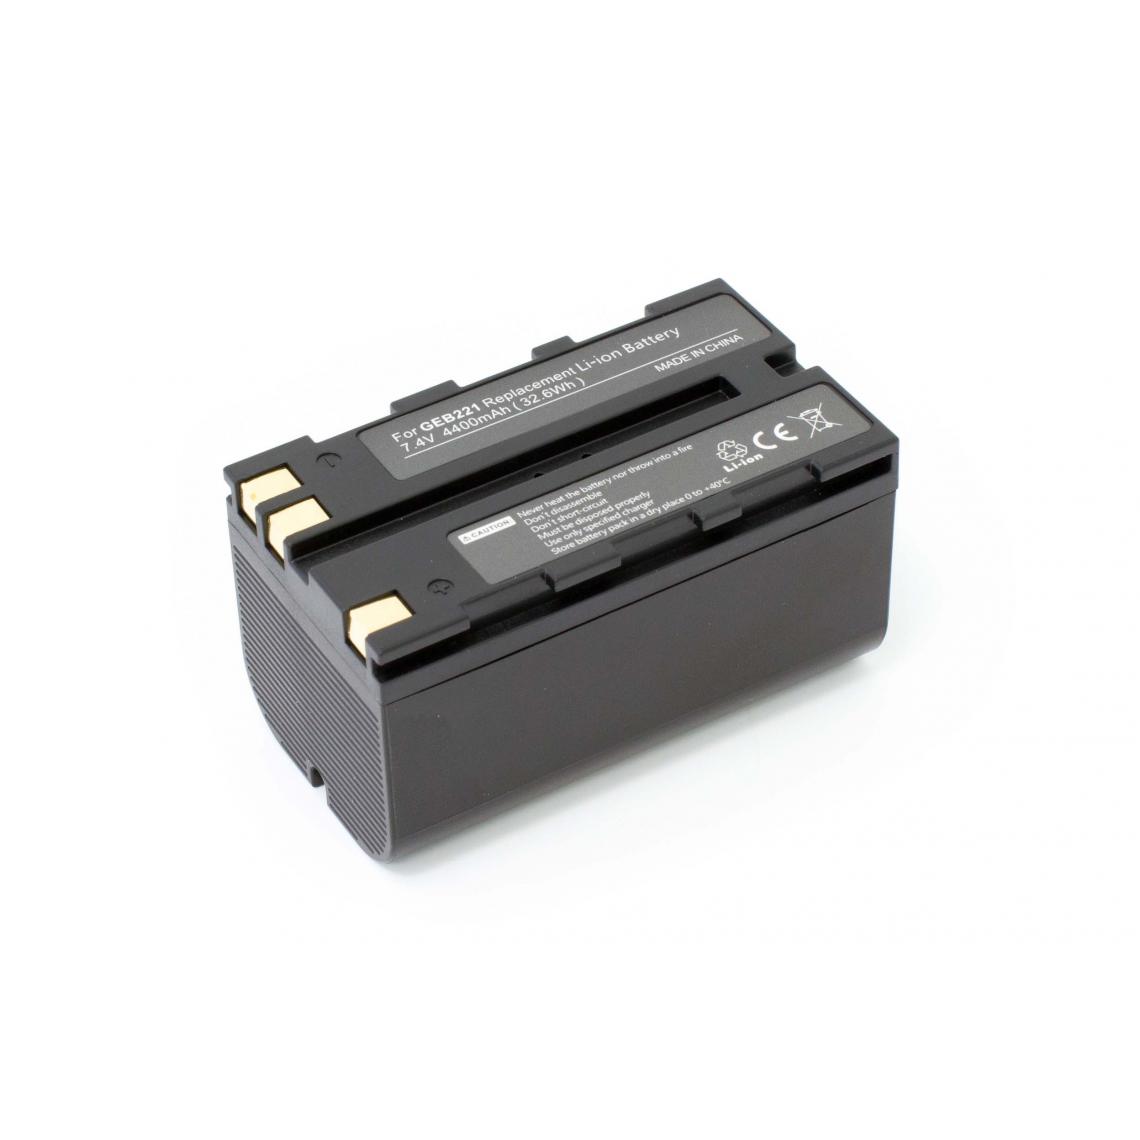 Vhbw - vhbw batterie remplace Leica 724117, 733269, 733270, 772806 pour appareil photo DSLR (4400mAh, 7,4V, Li-Ion) - Piles rechargeables